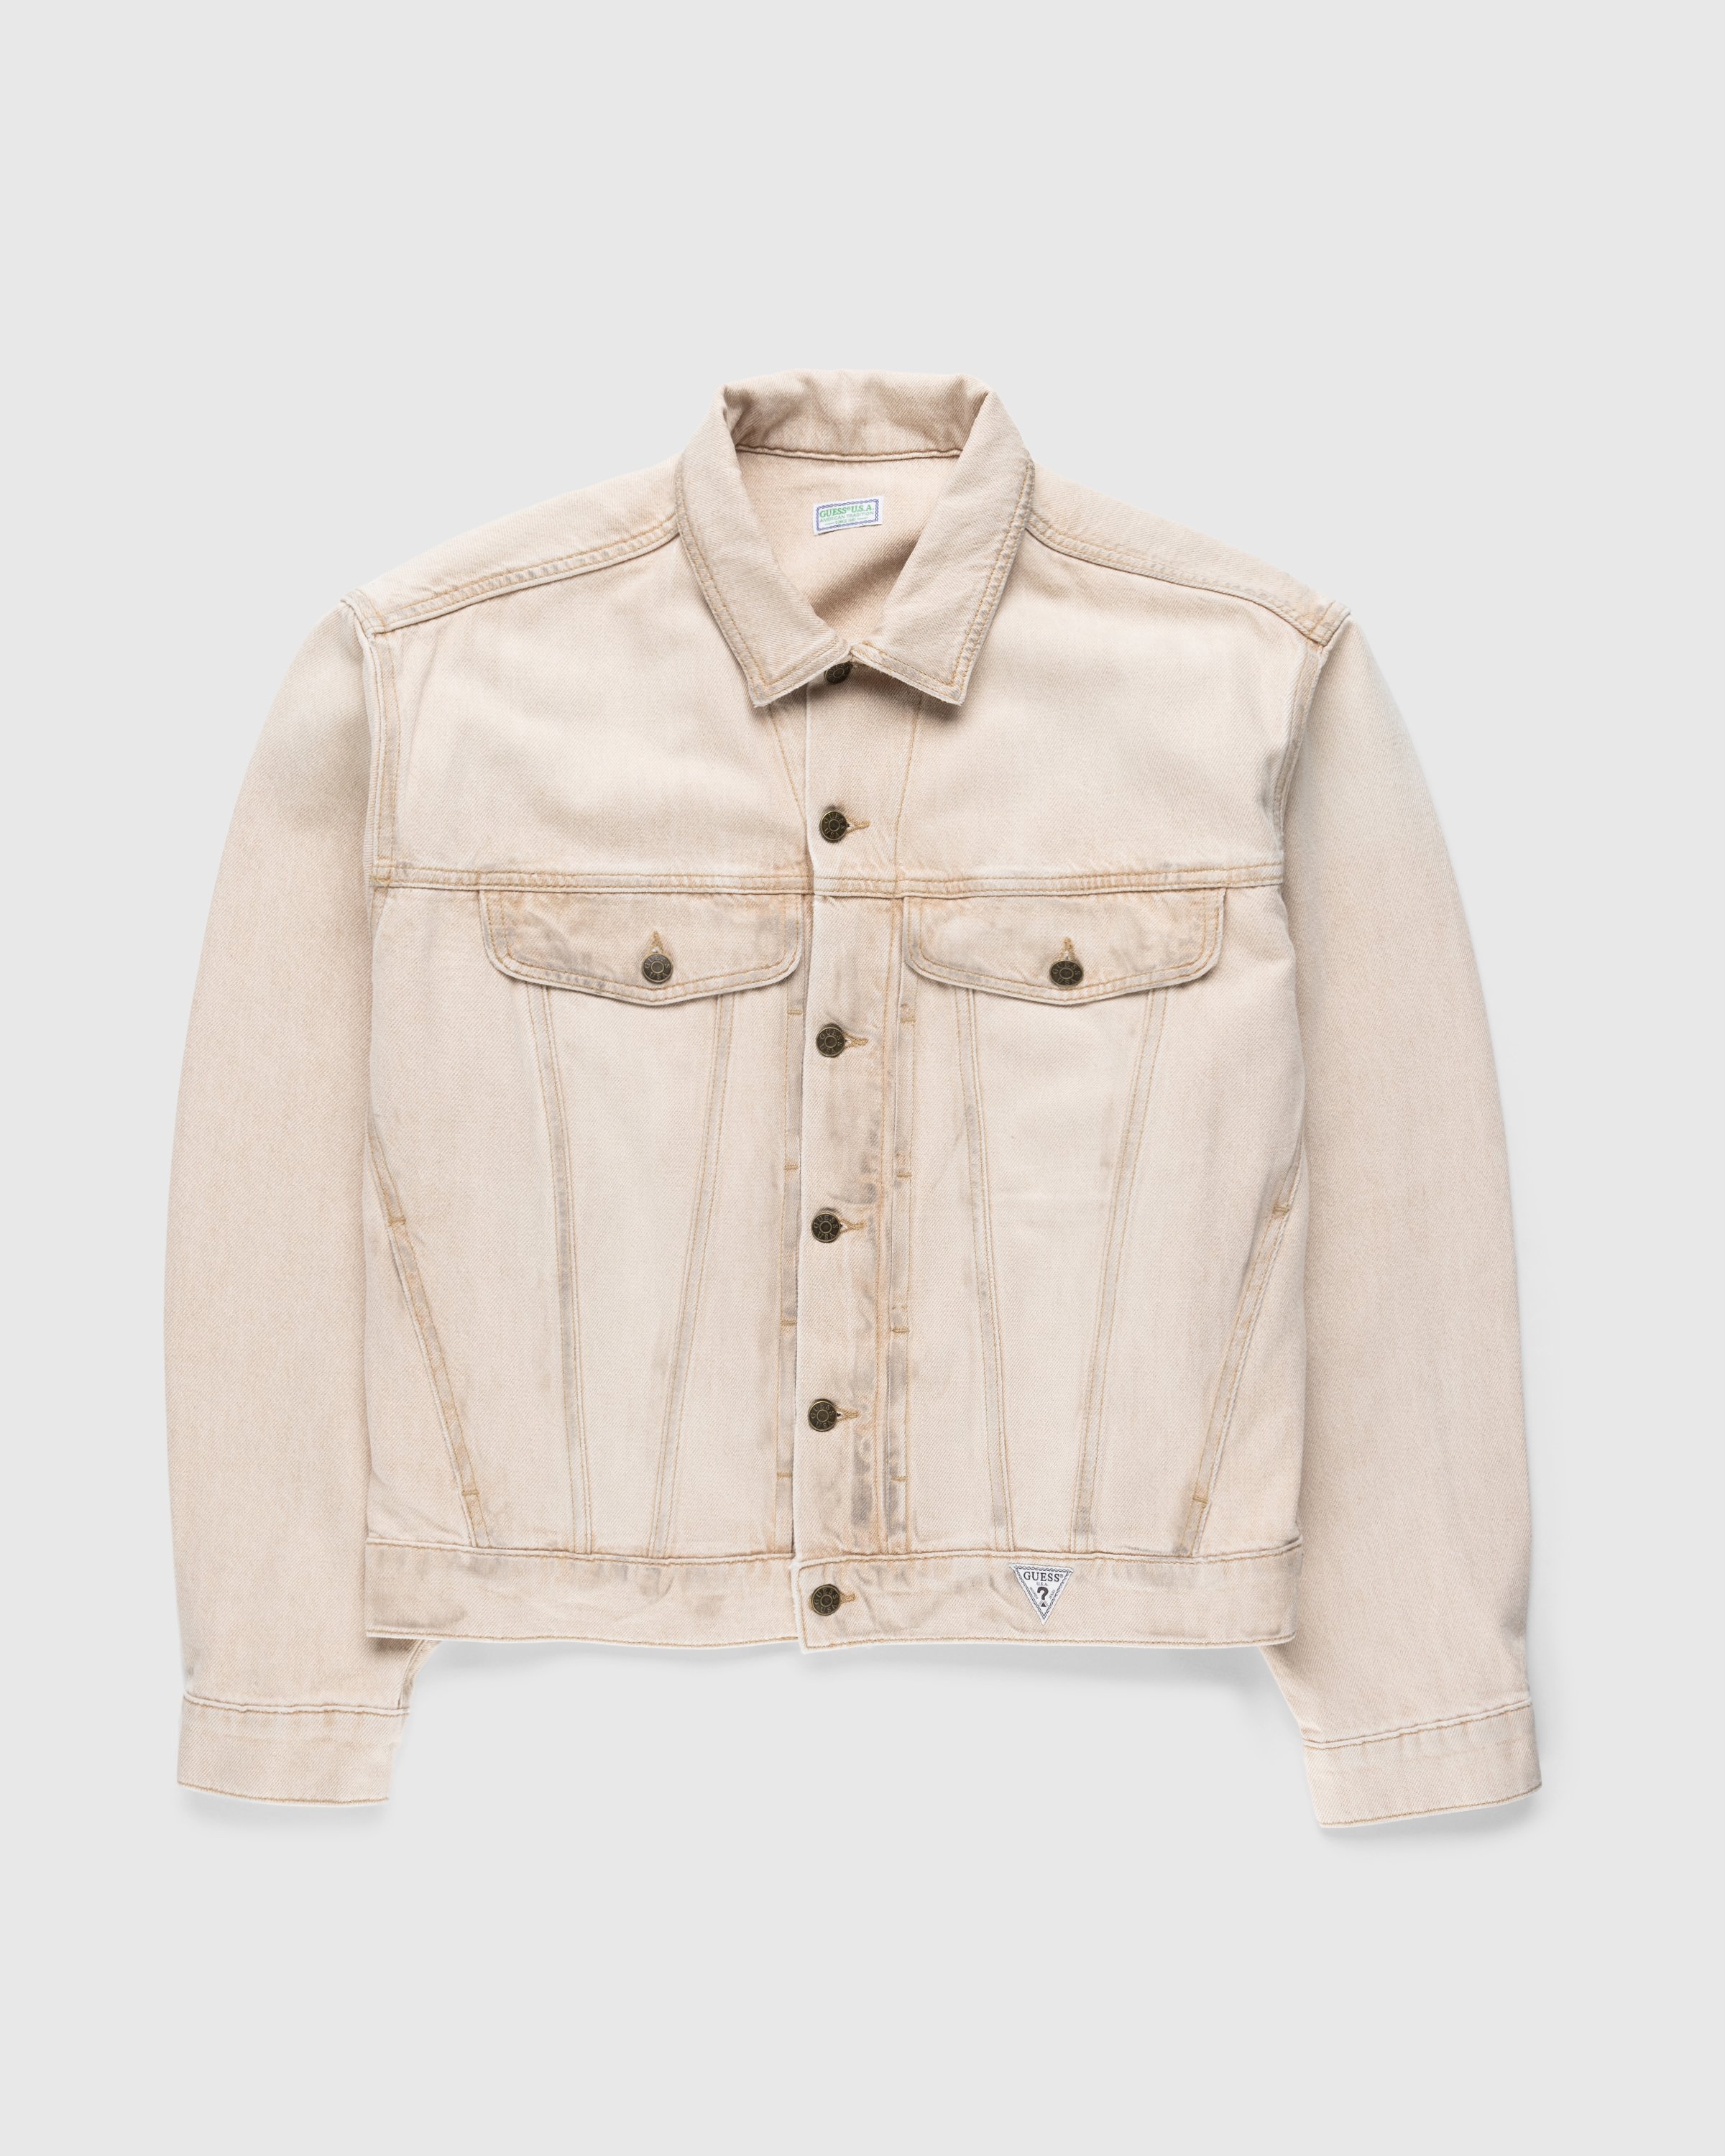 Guess USA - Vintage Denim Jacket Beige - Clothing - Beige - Image 1